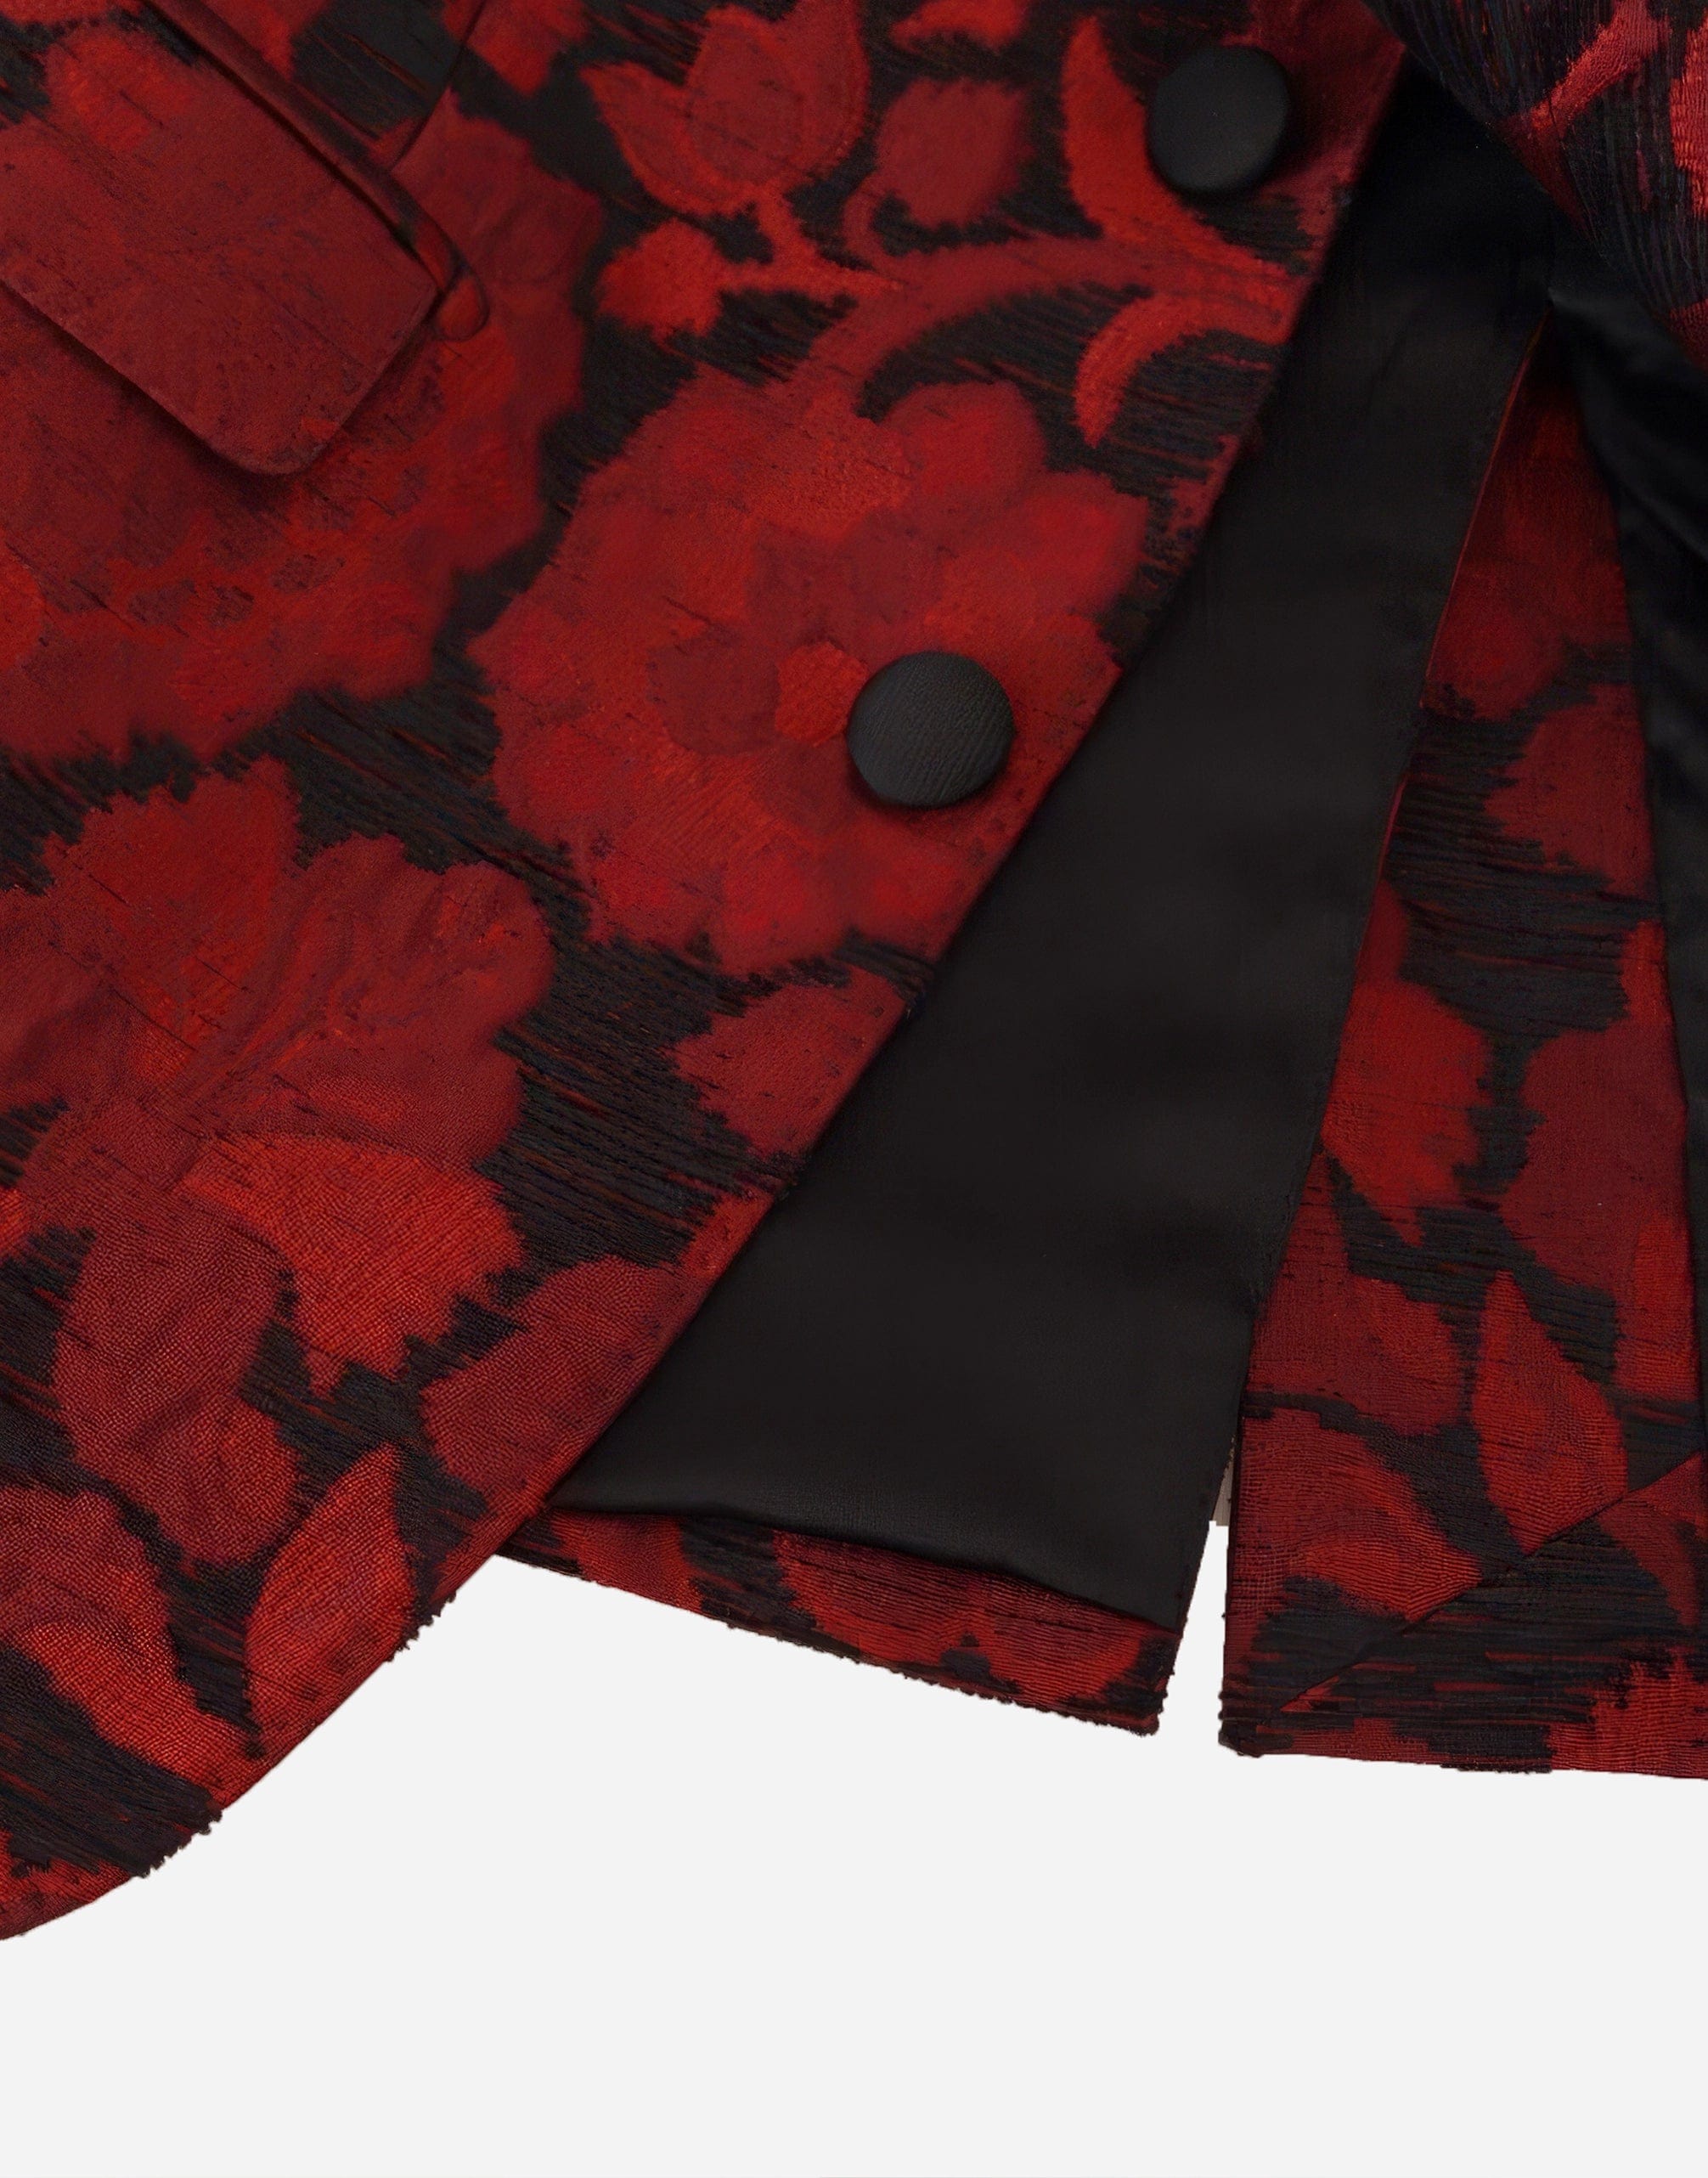 Dolce & Gabbana Floral Jacquard Suit Jacket